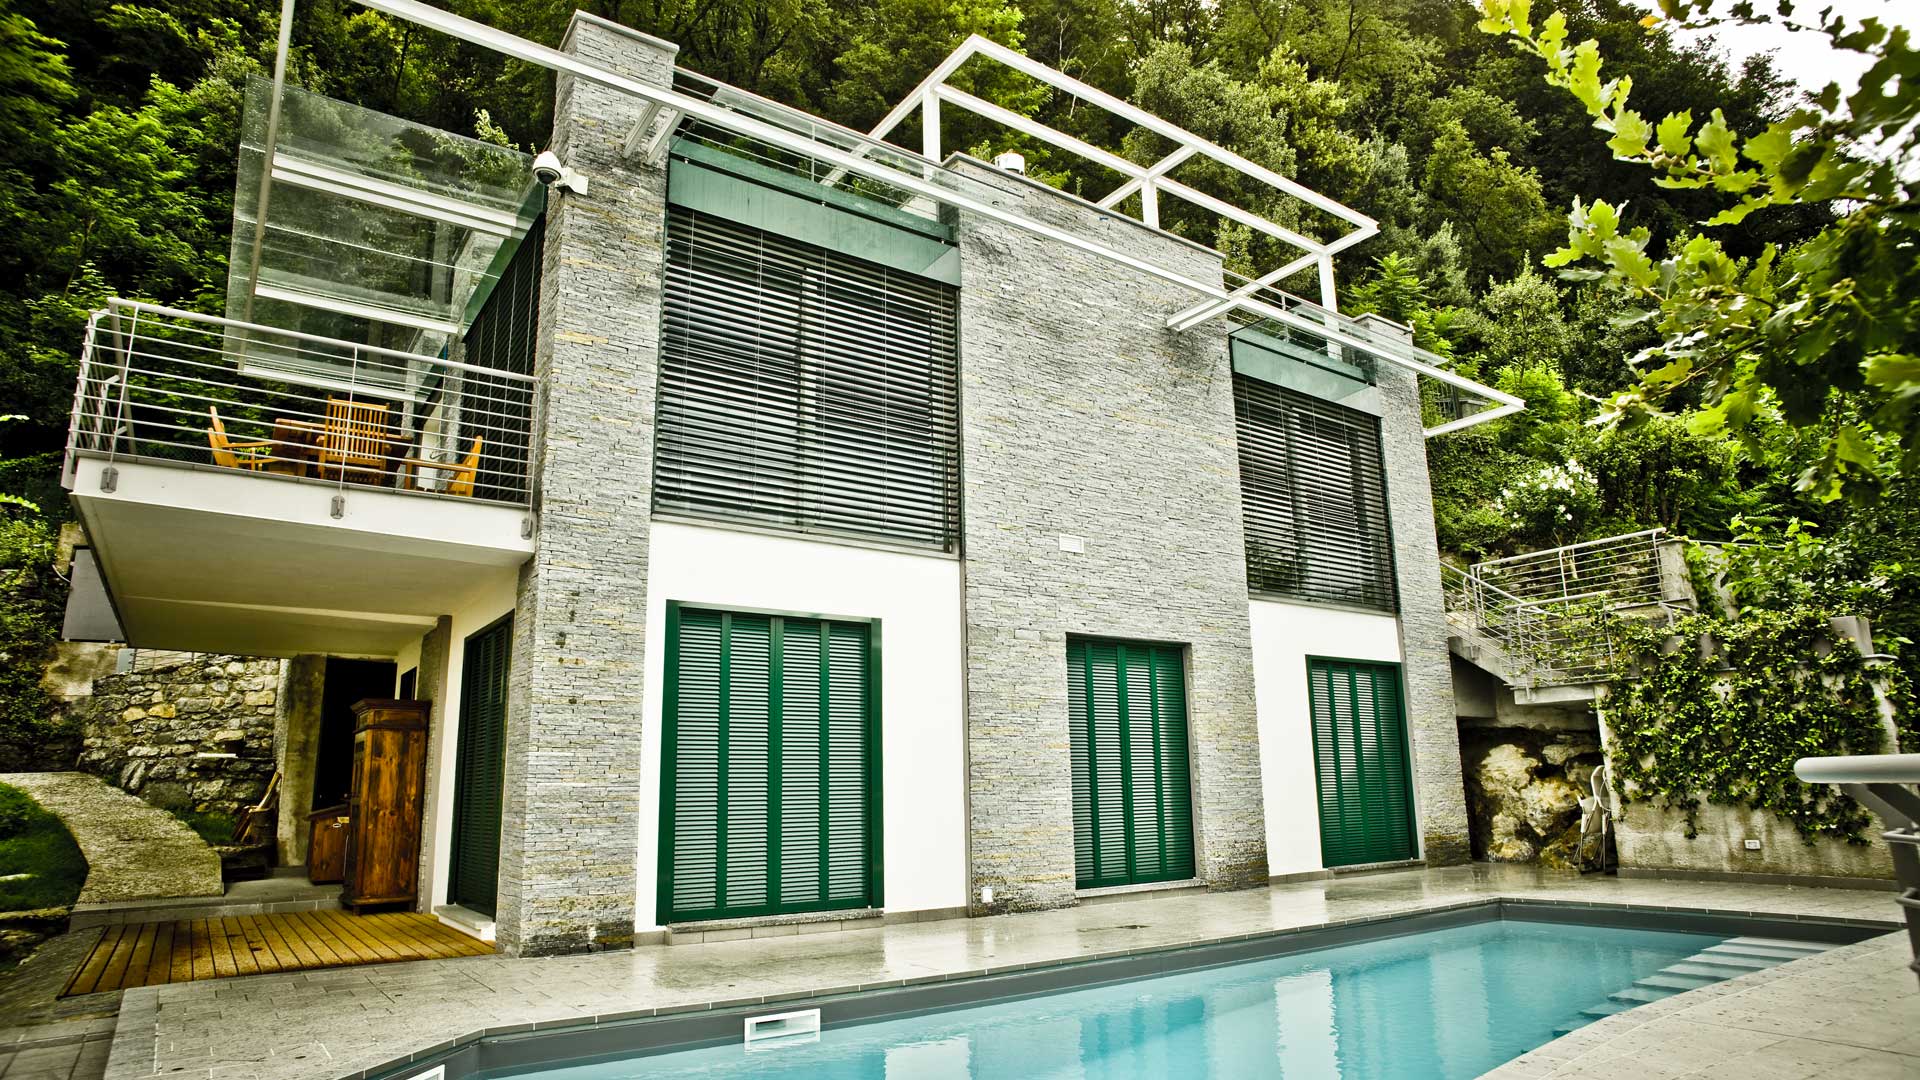 Le realizzazioni di Art Metal Srl: villa di pregio architettonico con piscina a Como.